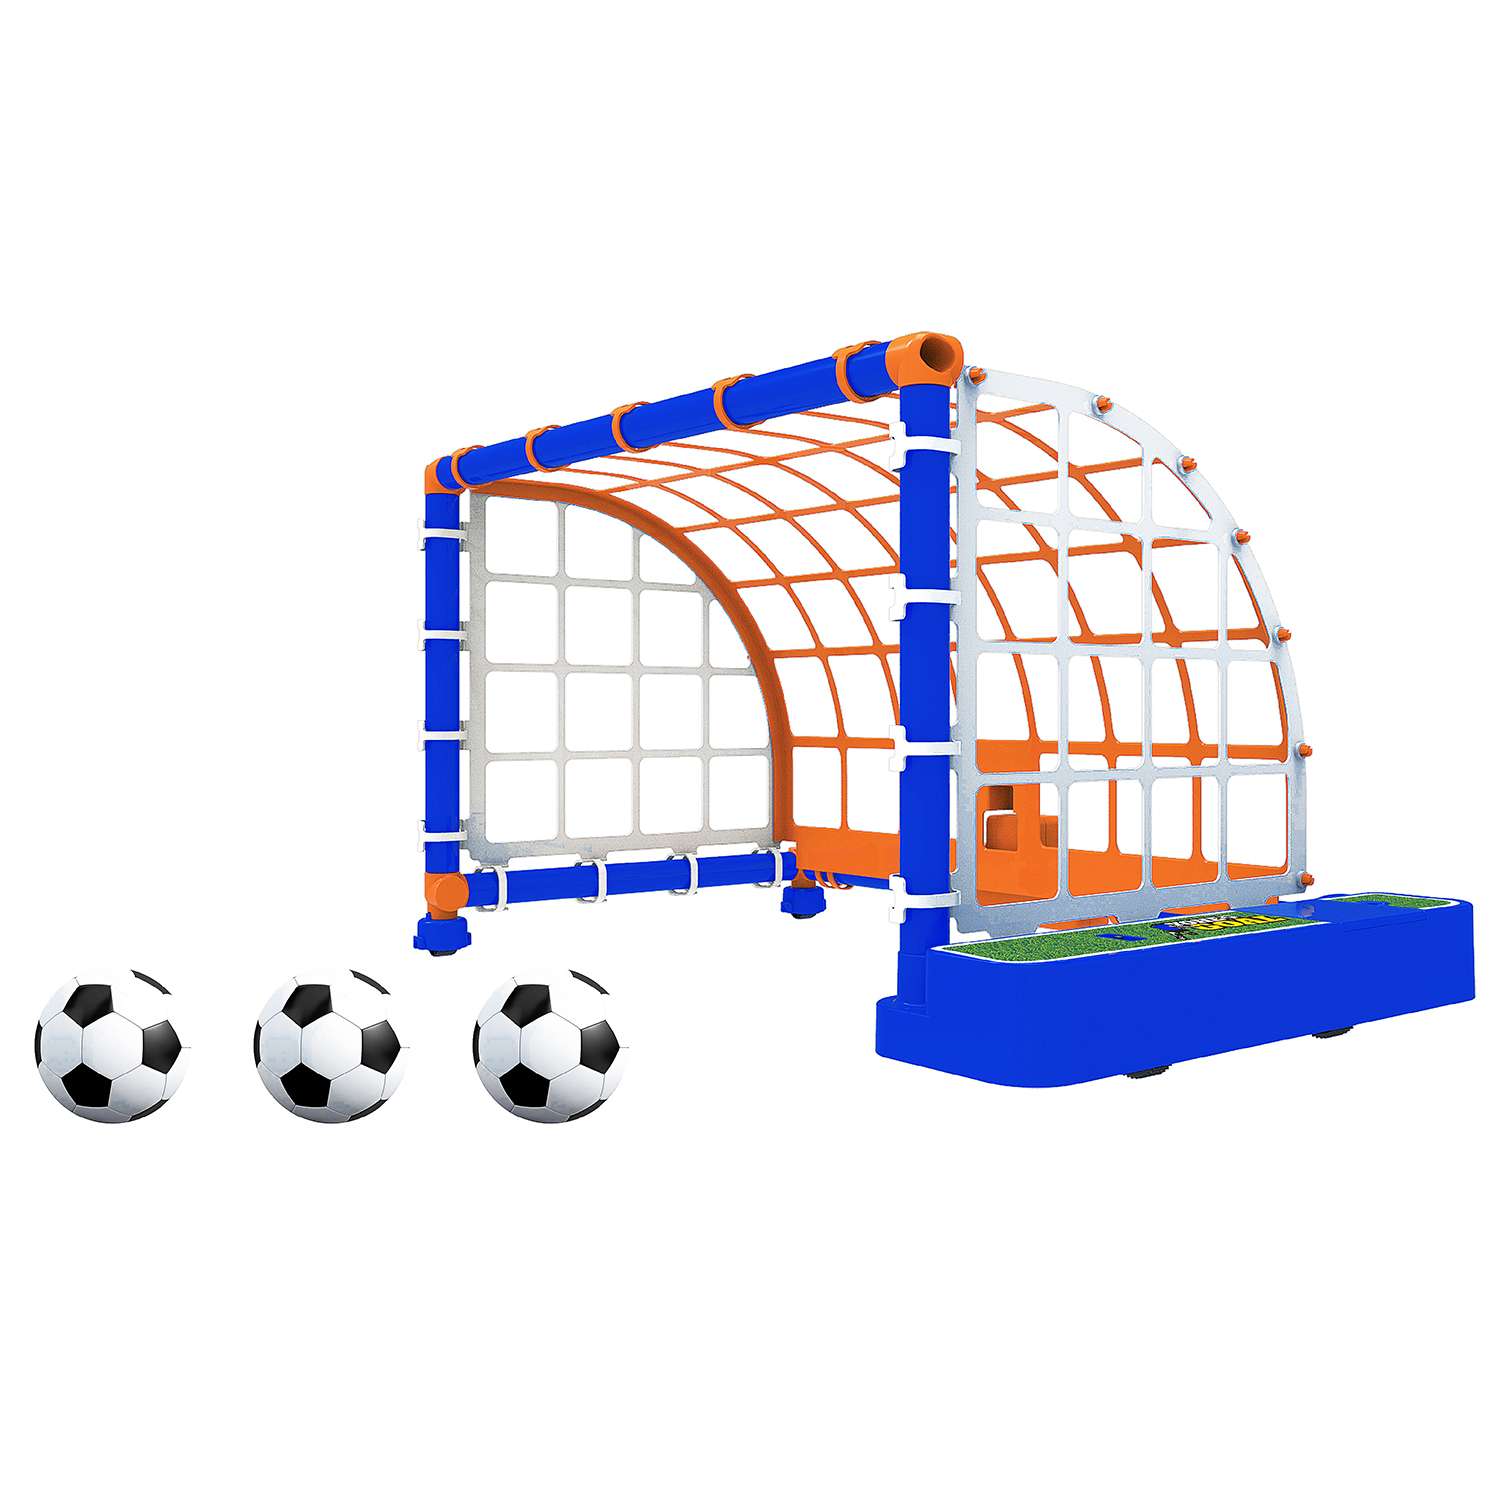 Игровой набор YOHEHA Подвижные футбольные ворота - фото 1